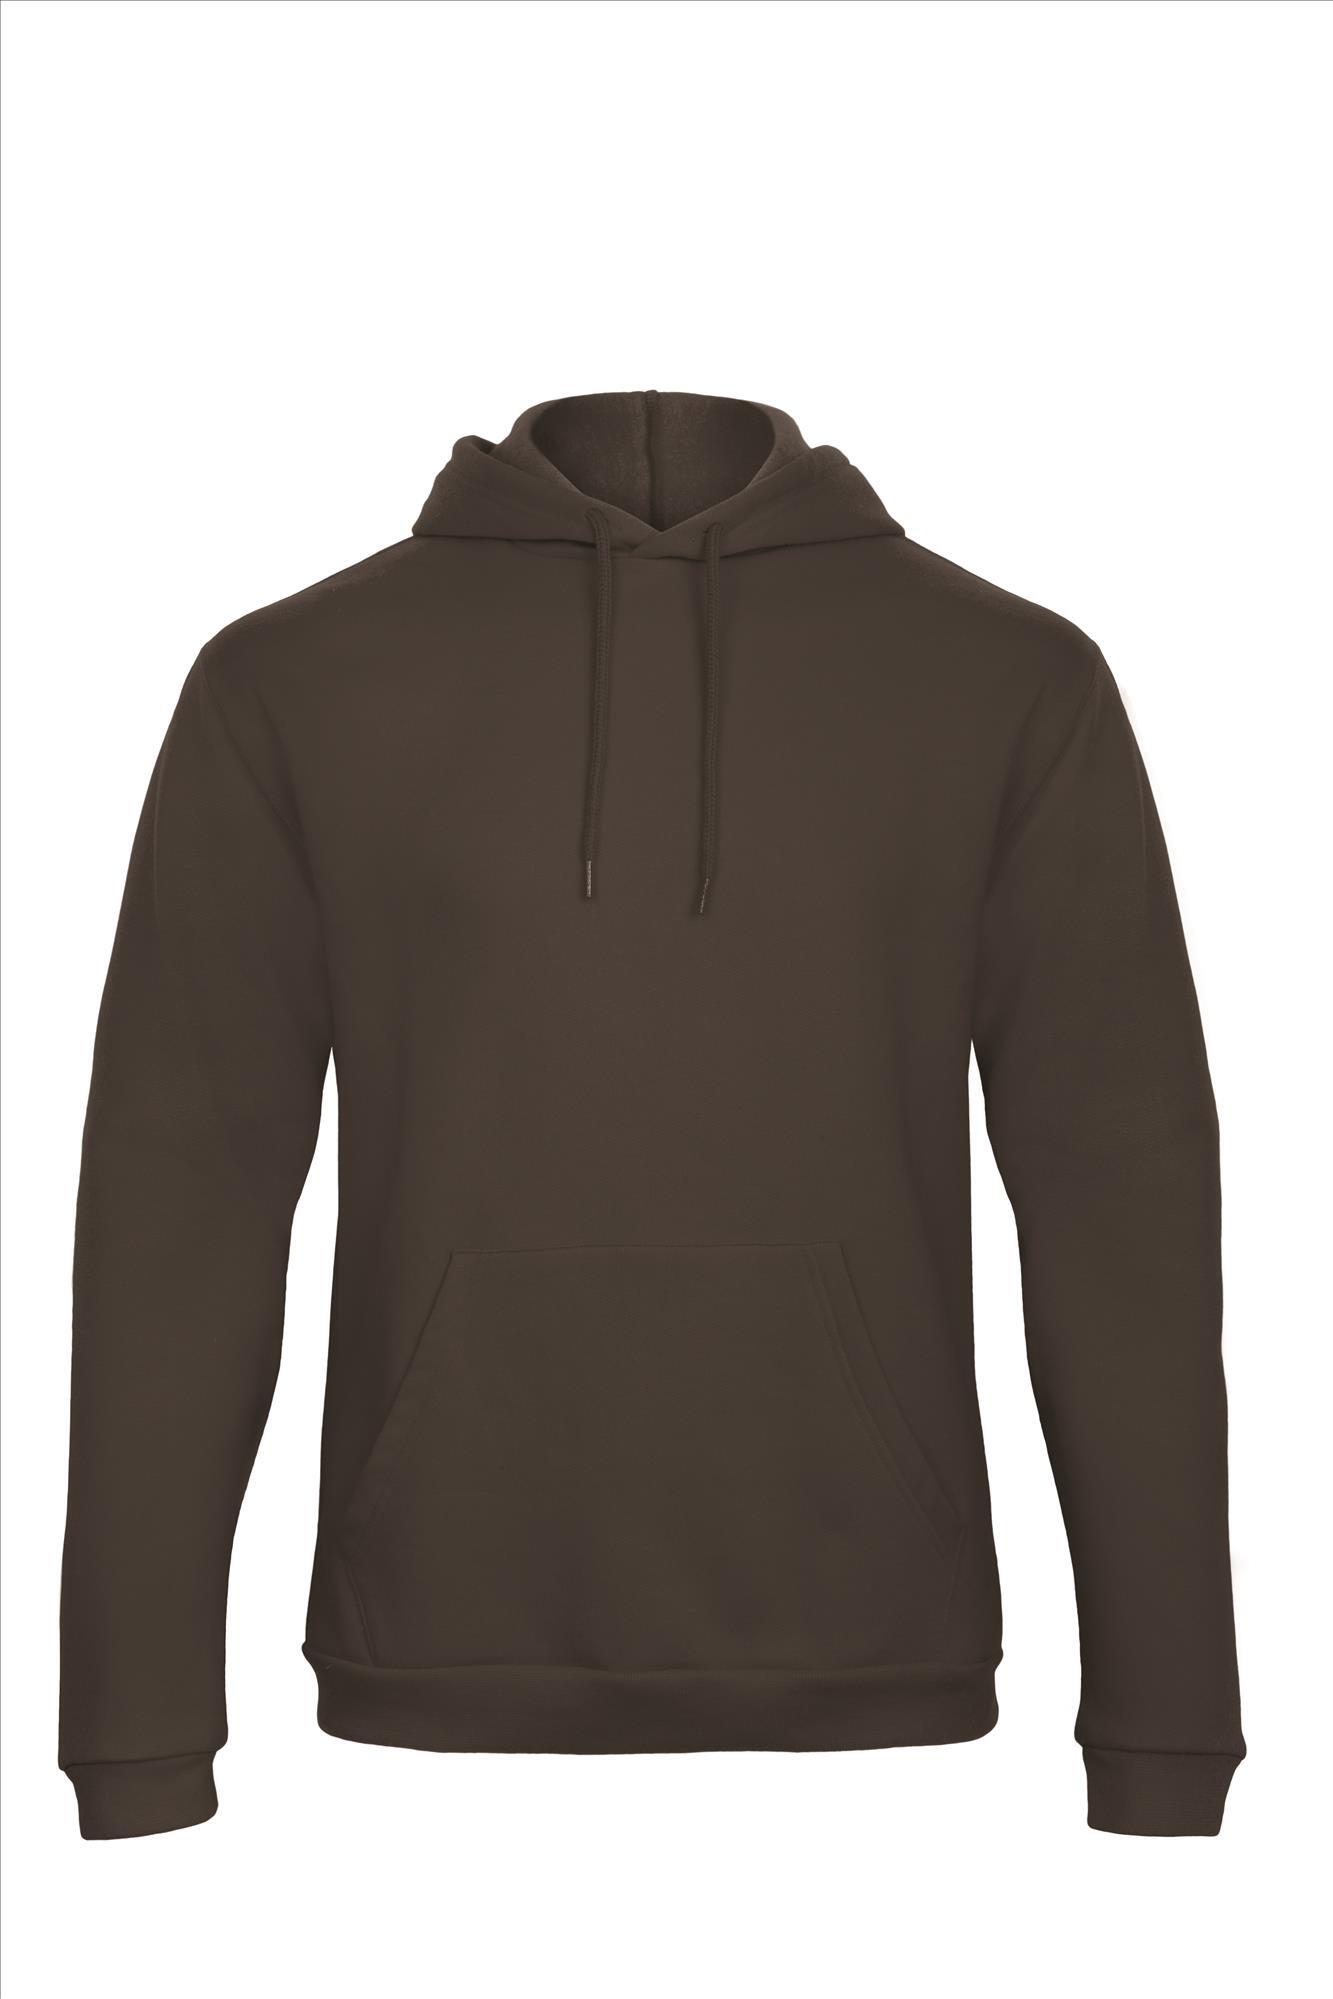 Bruine hoodie Sweatshirt Unisex met capuchon heren bedrukbaar